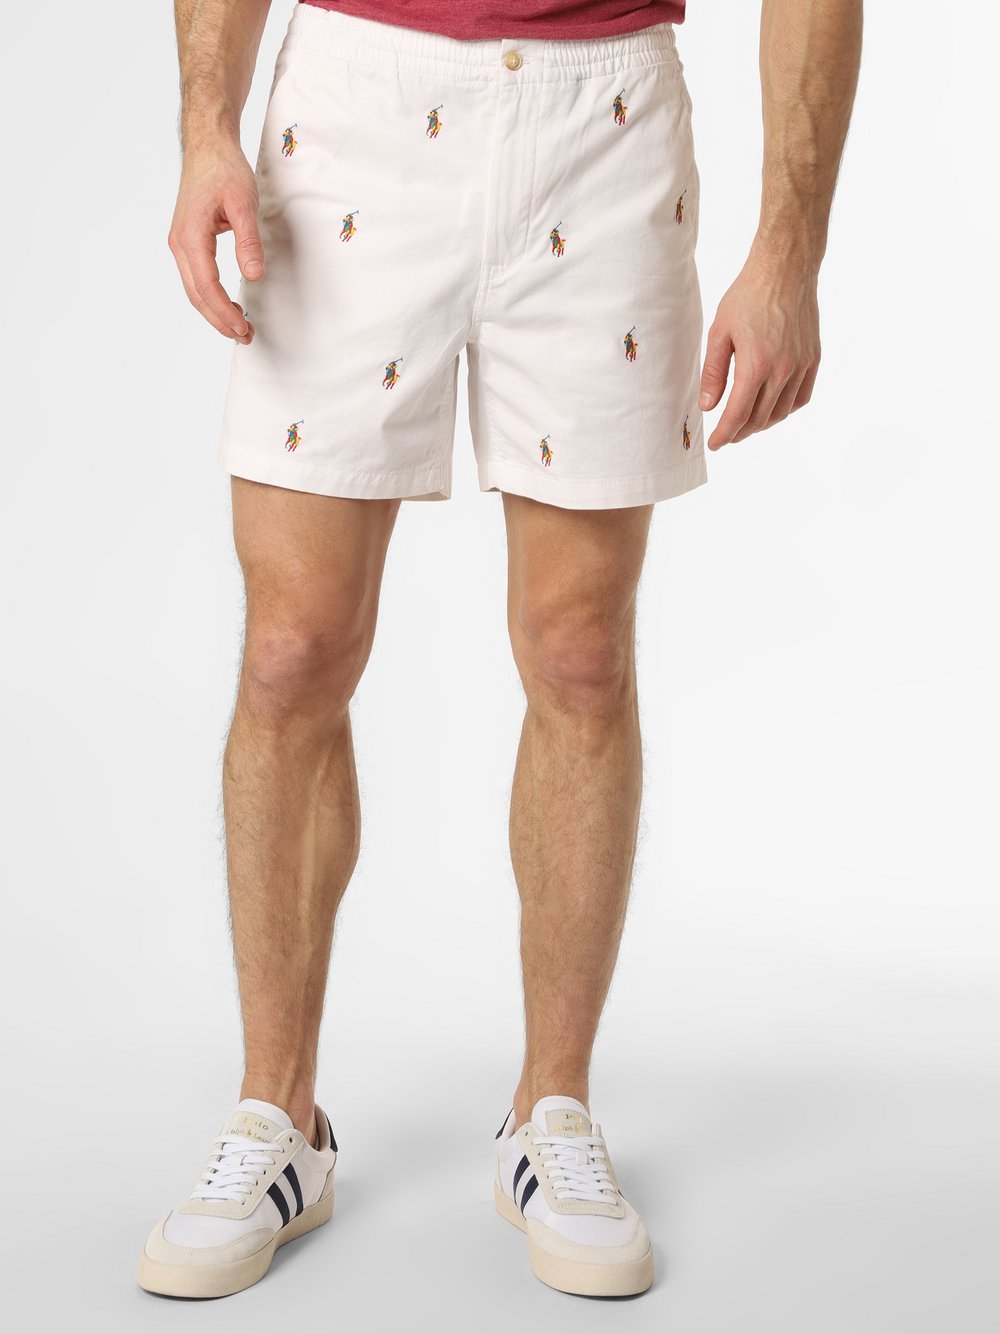 Polo Ralph Lauren - Spodenki męskie – Strech Classic Fit, biały